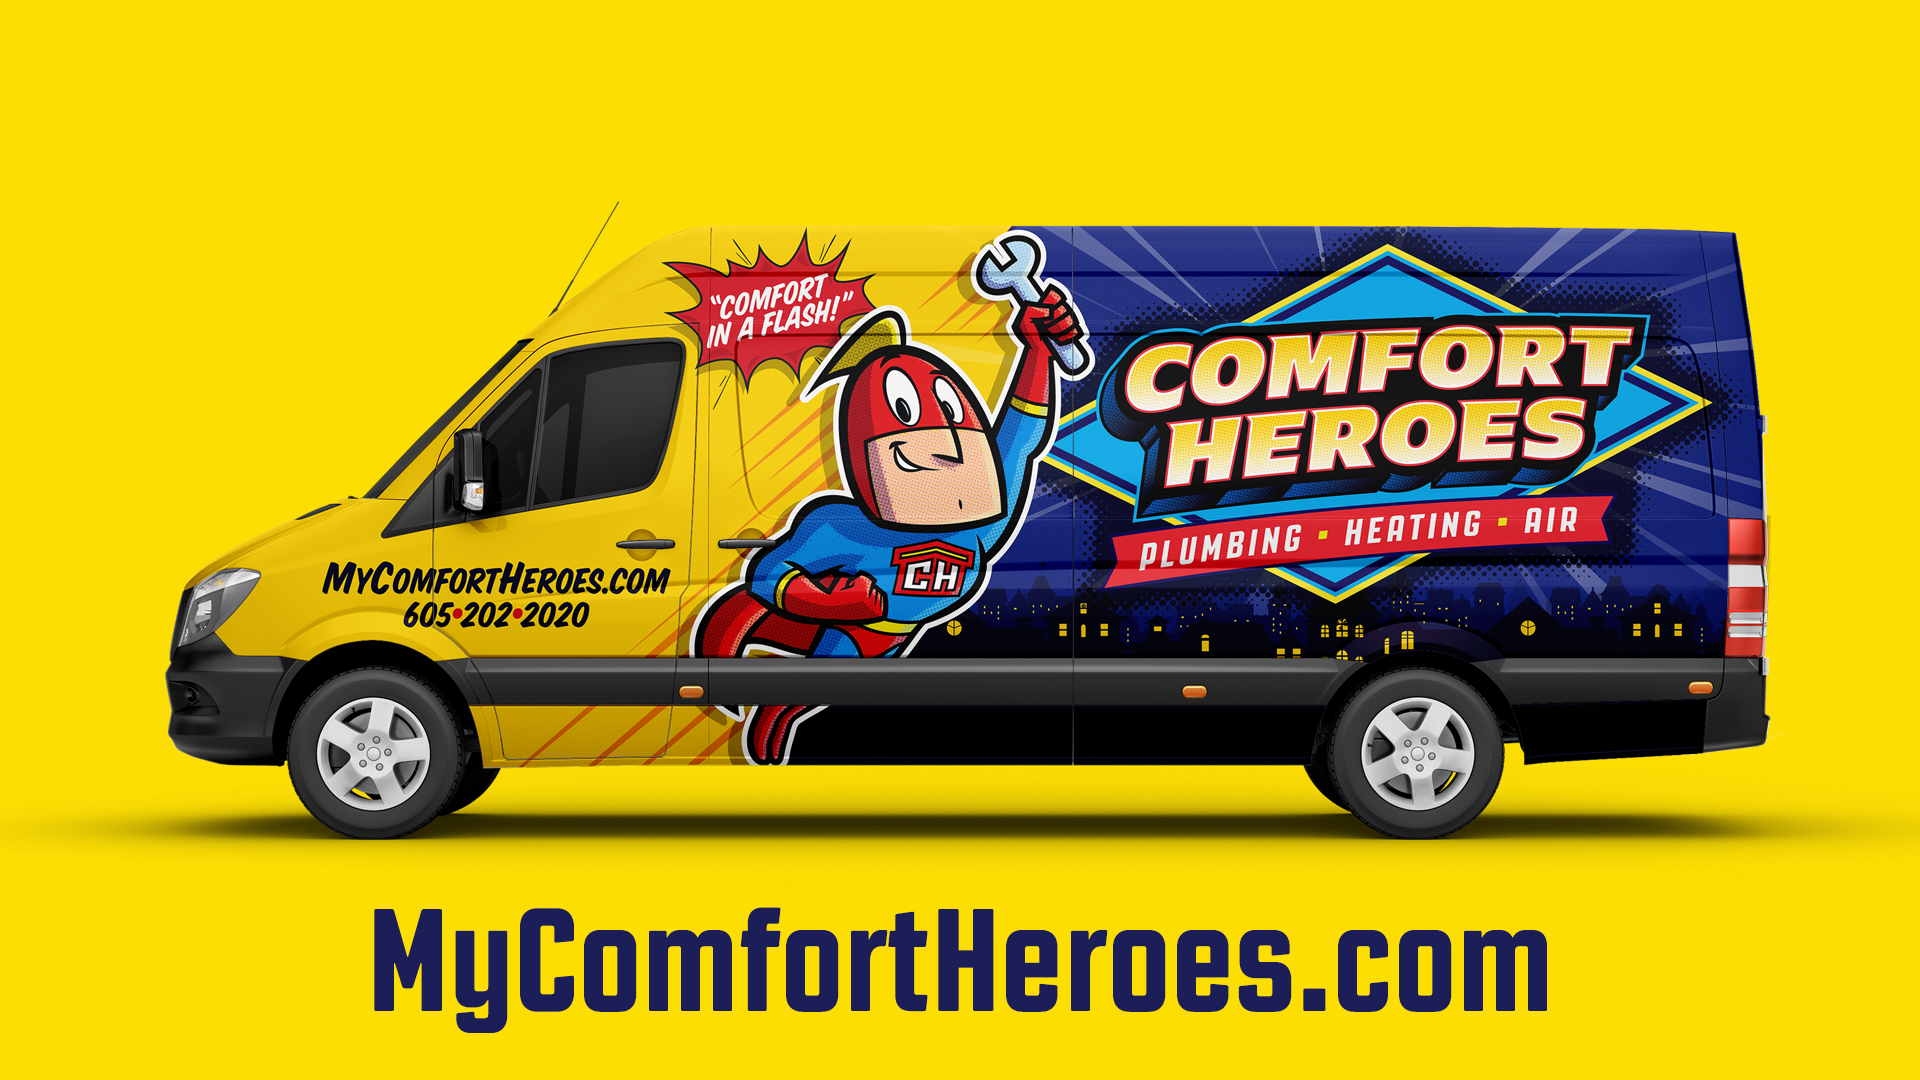 Comfort Heroes Plumbing, Heating & Air